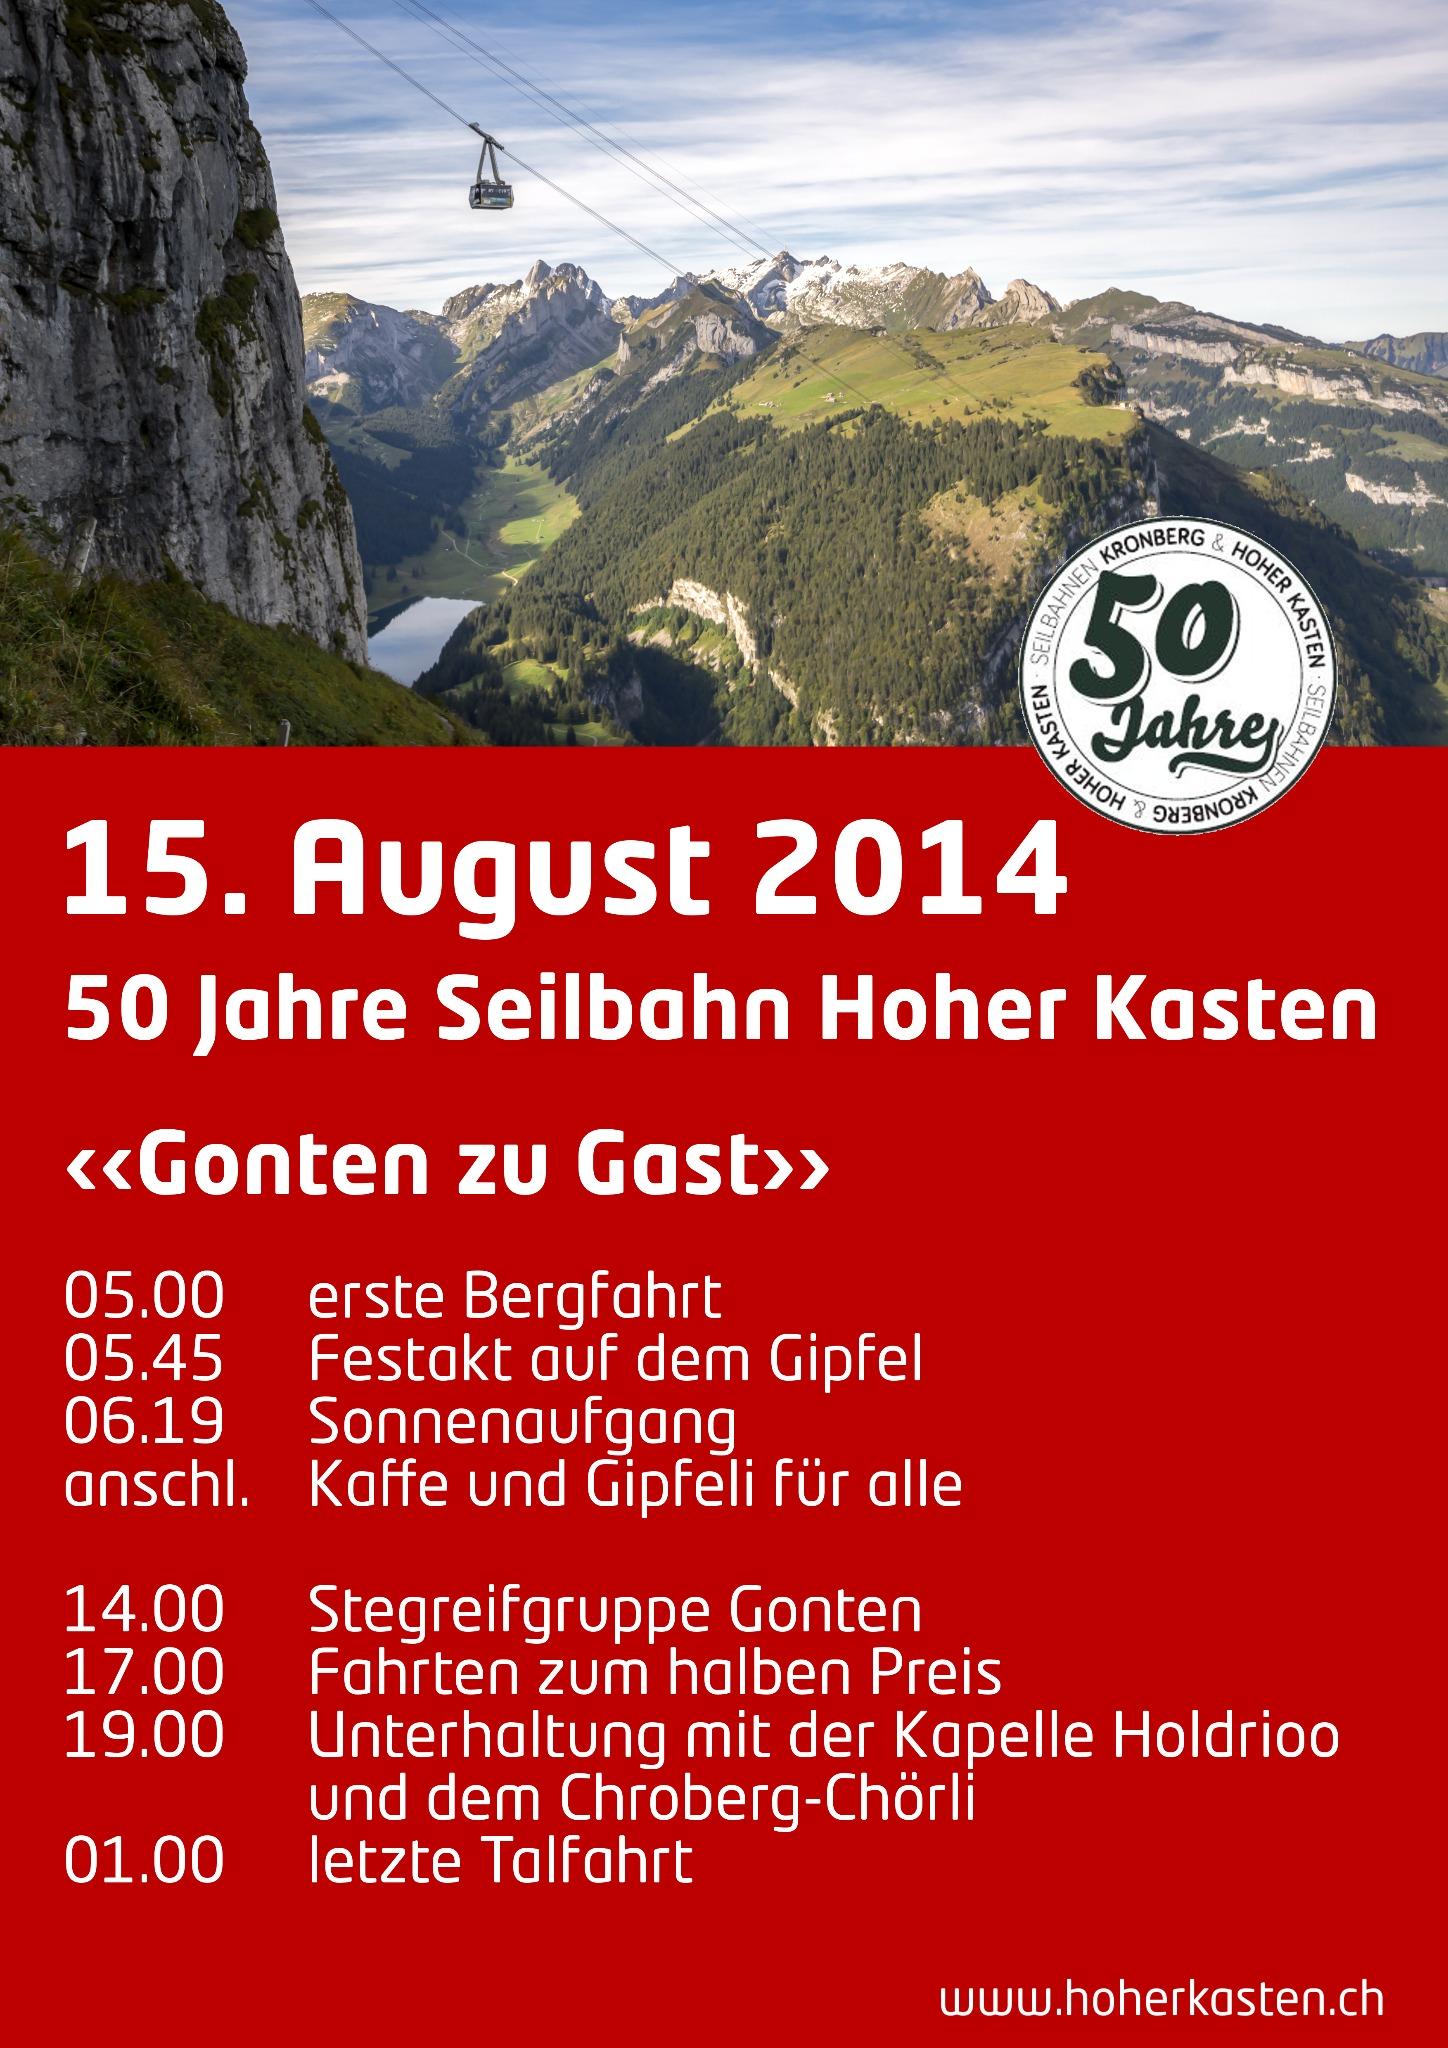 Hoher Kasten on X: 15. August 2014, 50 Jahre Seilbahn #Brülisau - # HoherKasten  / X